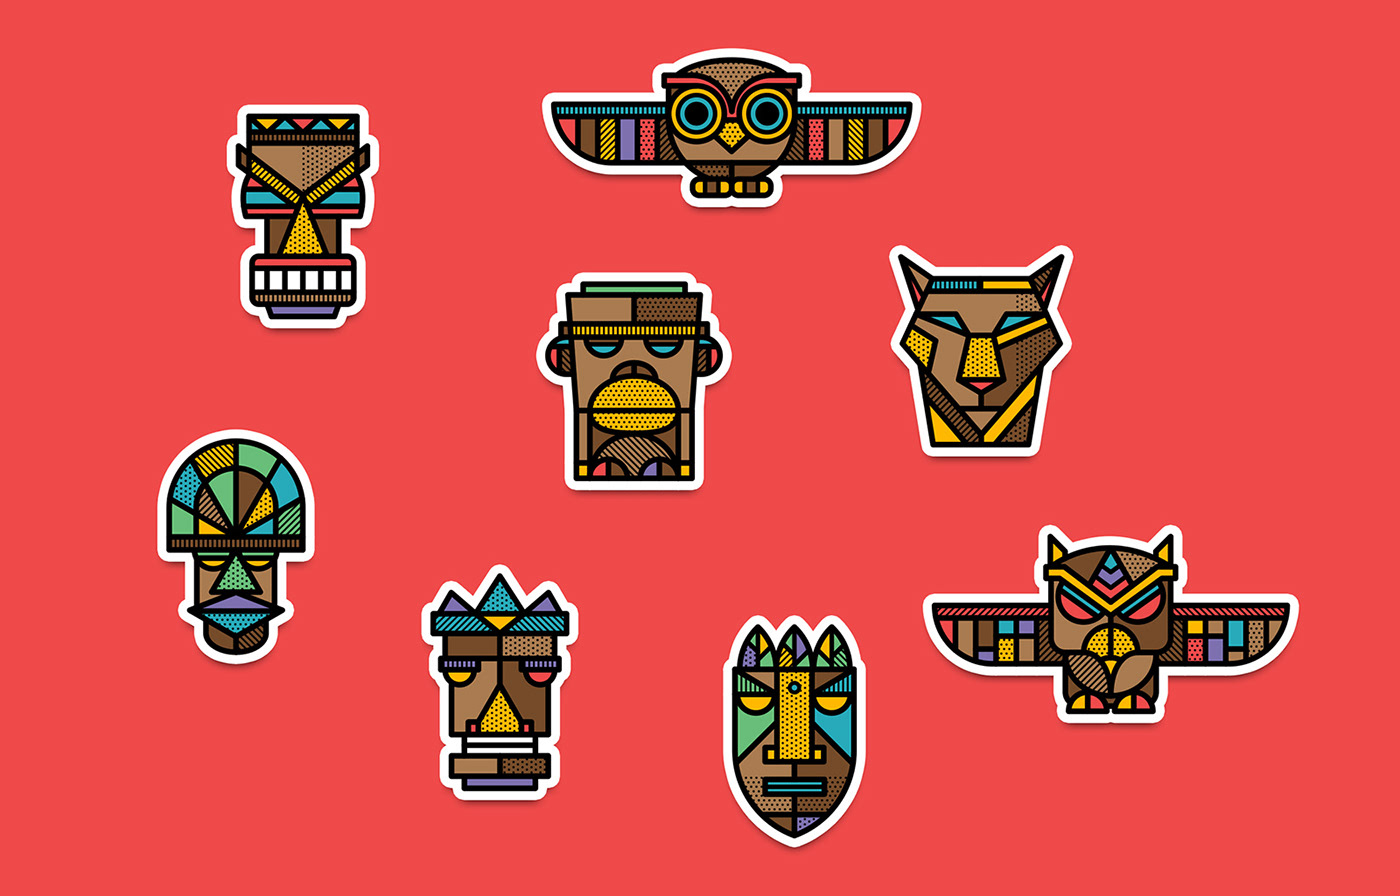 african Character geometric masks mike karolos Patterns pin Pop Art Tiki Totem